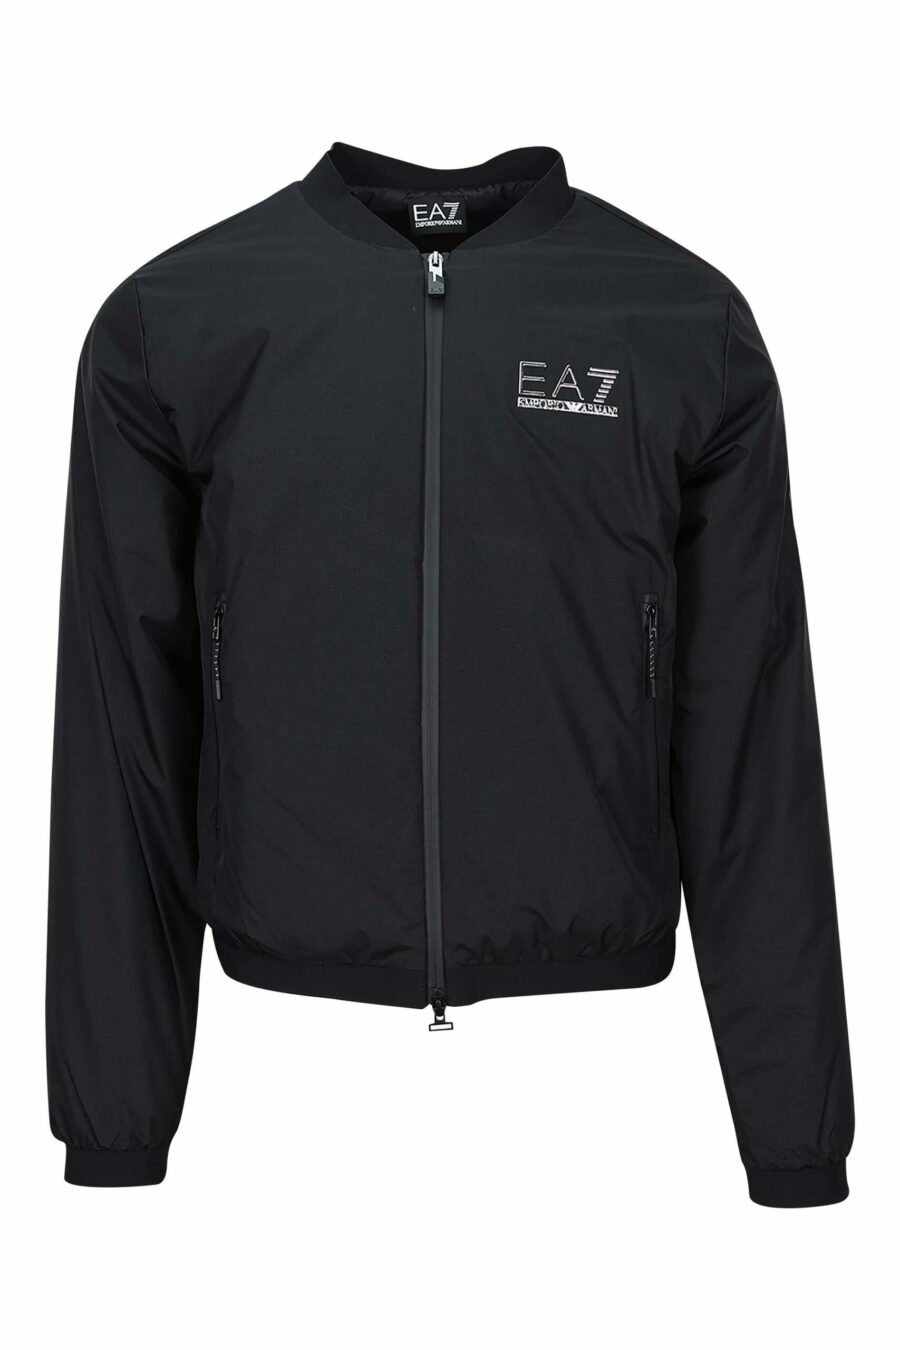 Schwarze Jacke mit "lux identity" Minilogo und seitlichem Logo - 8056787938434 skaliert